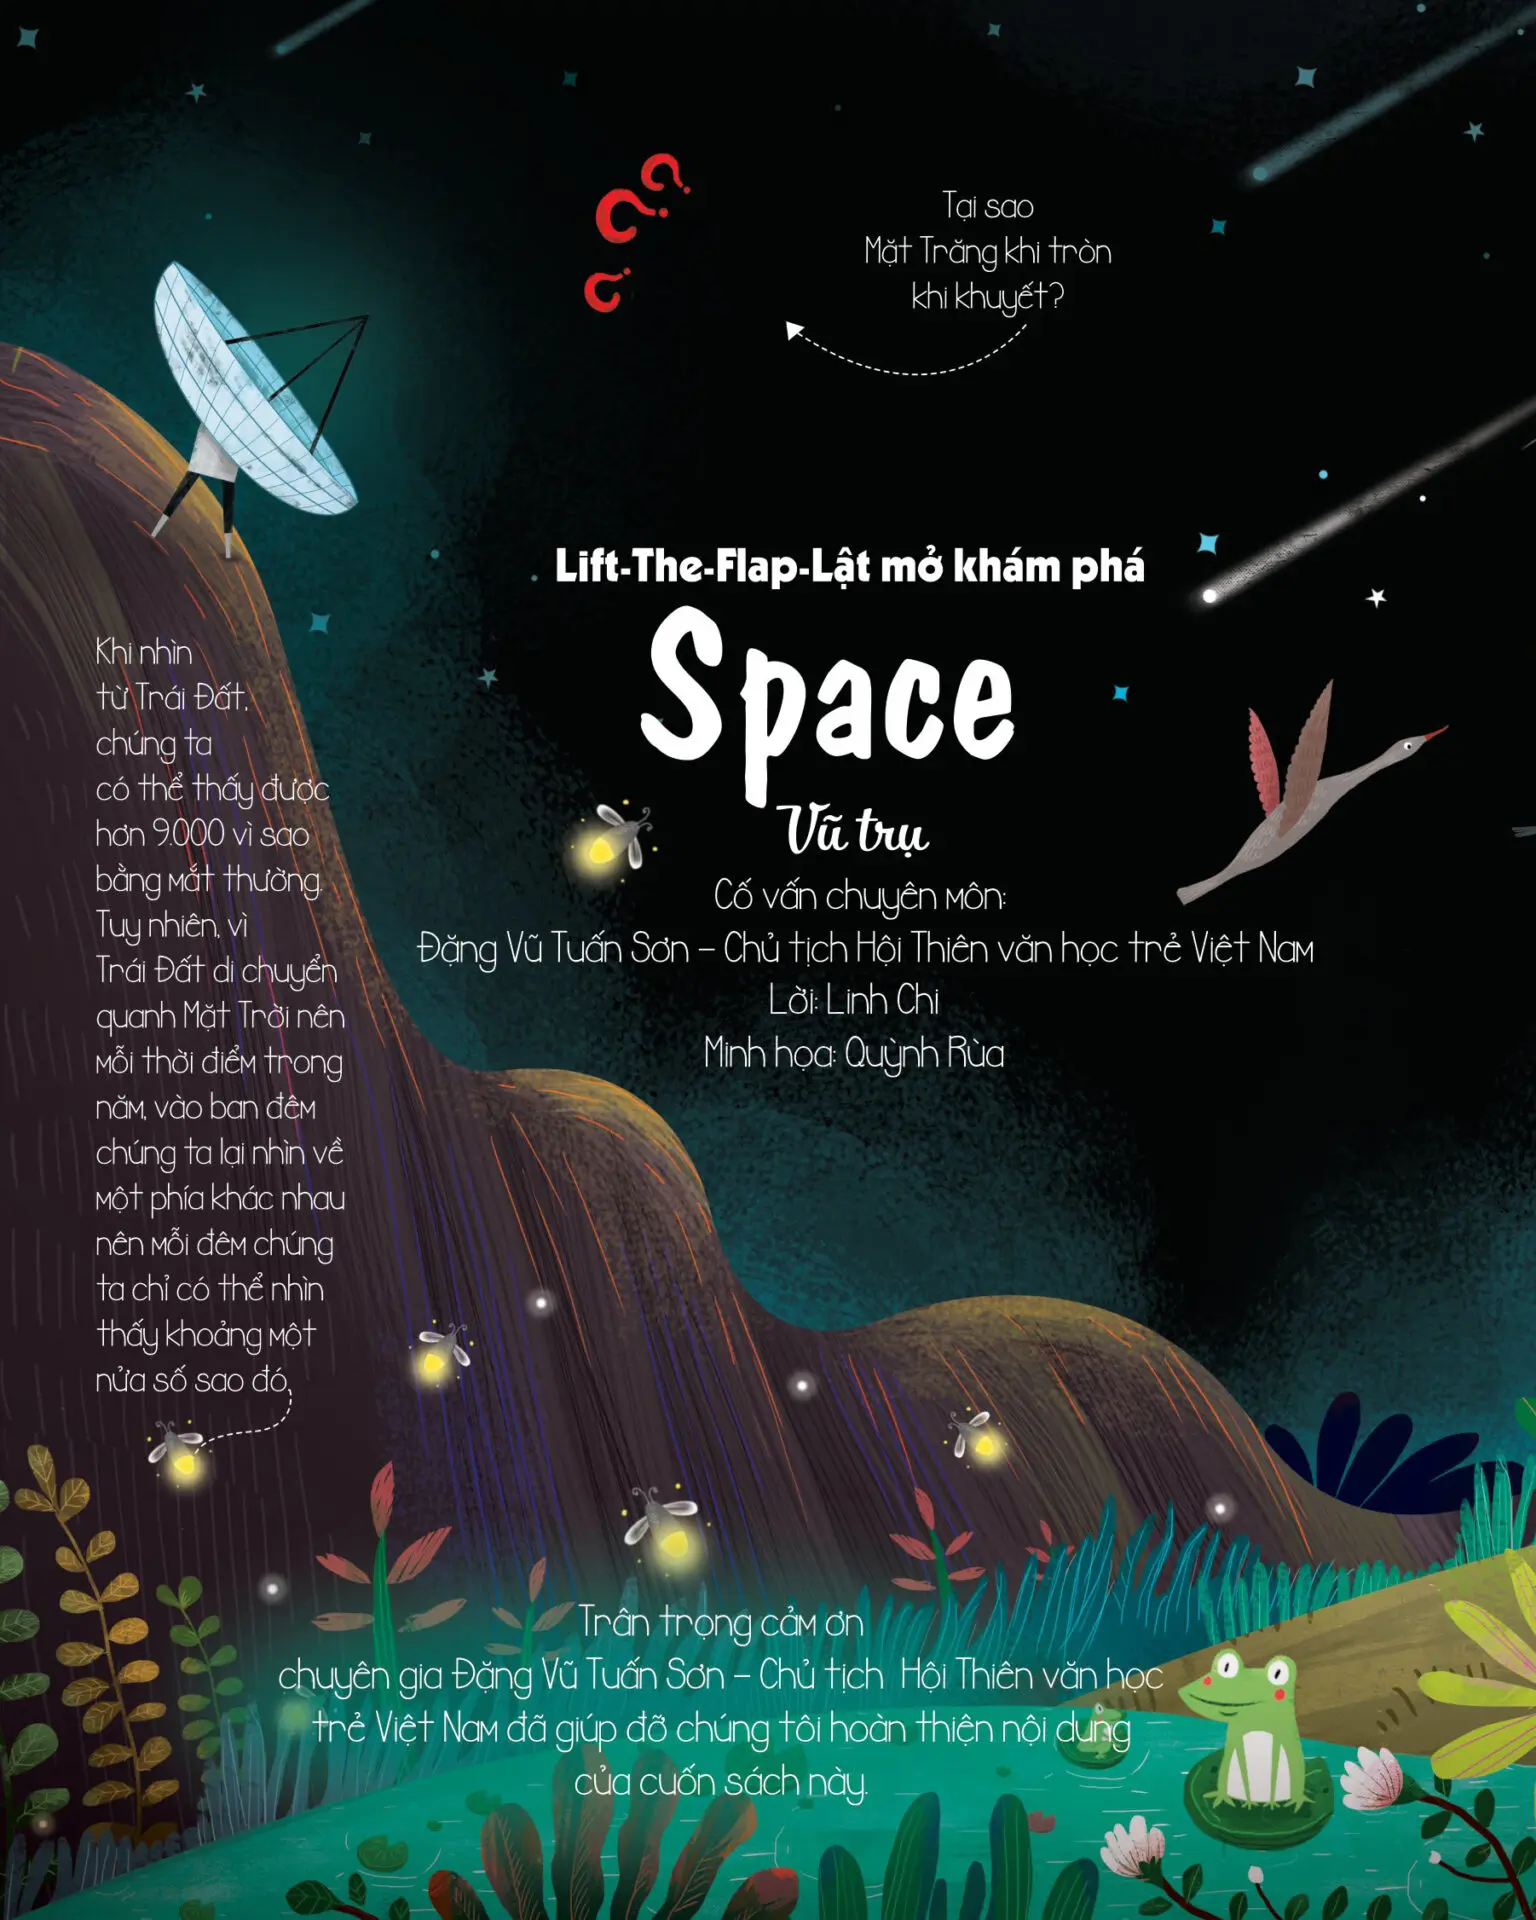 Sách Lift-The-Flap - Lật mở khám phá - Space - Vũ trụ bìa cứng